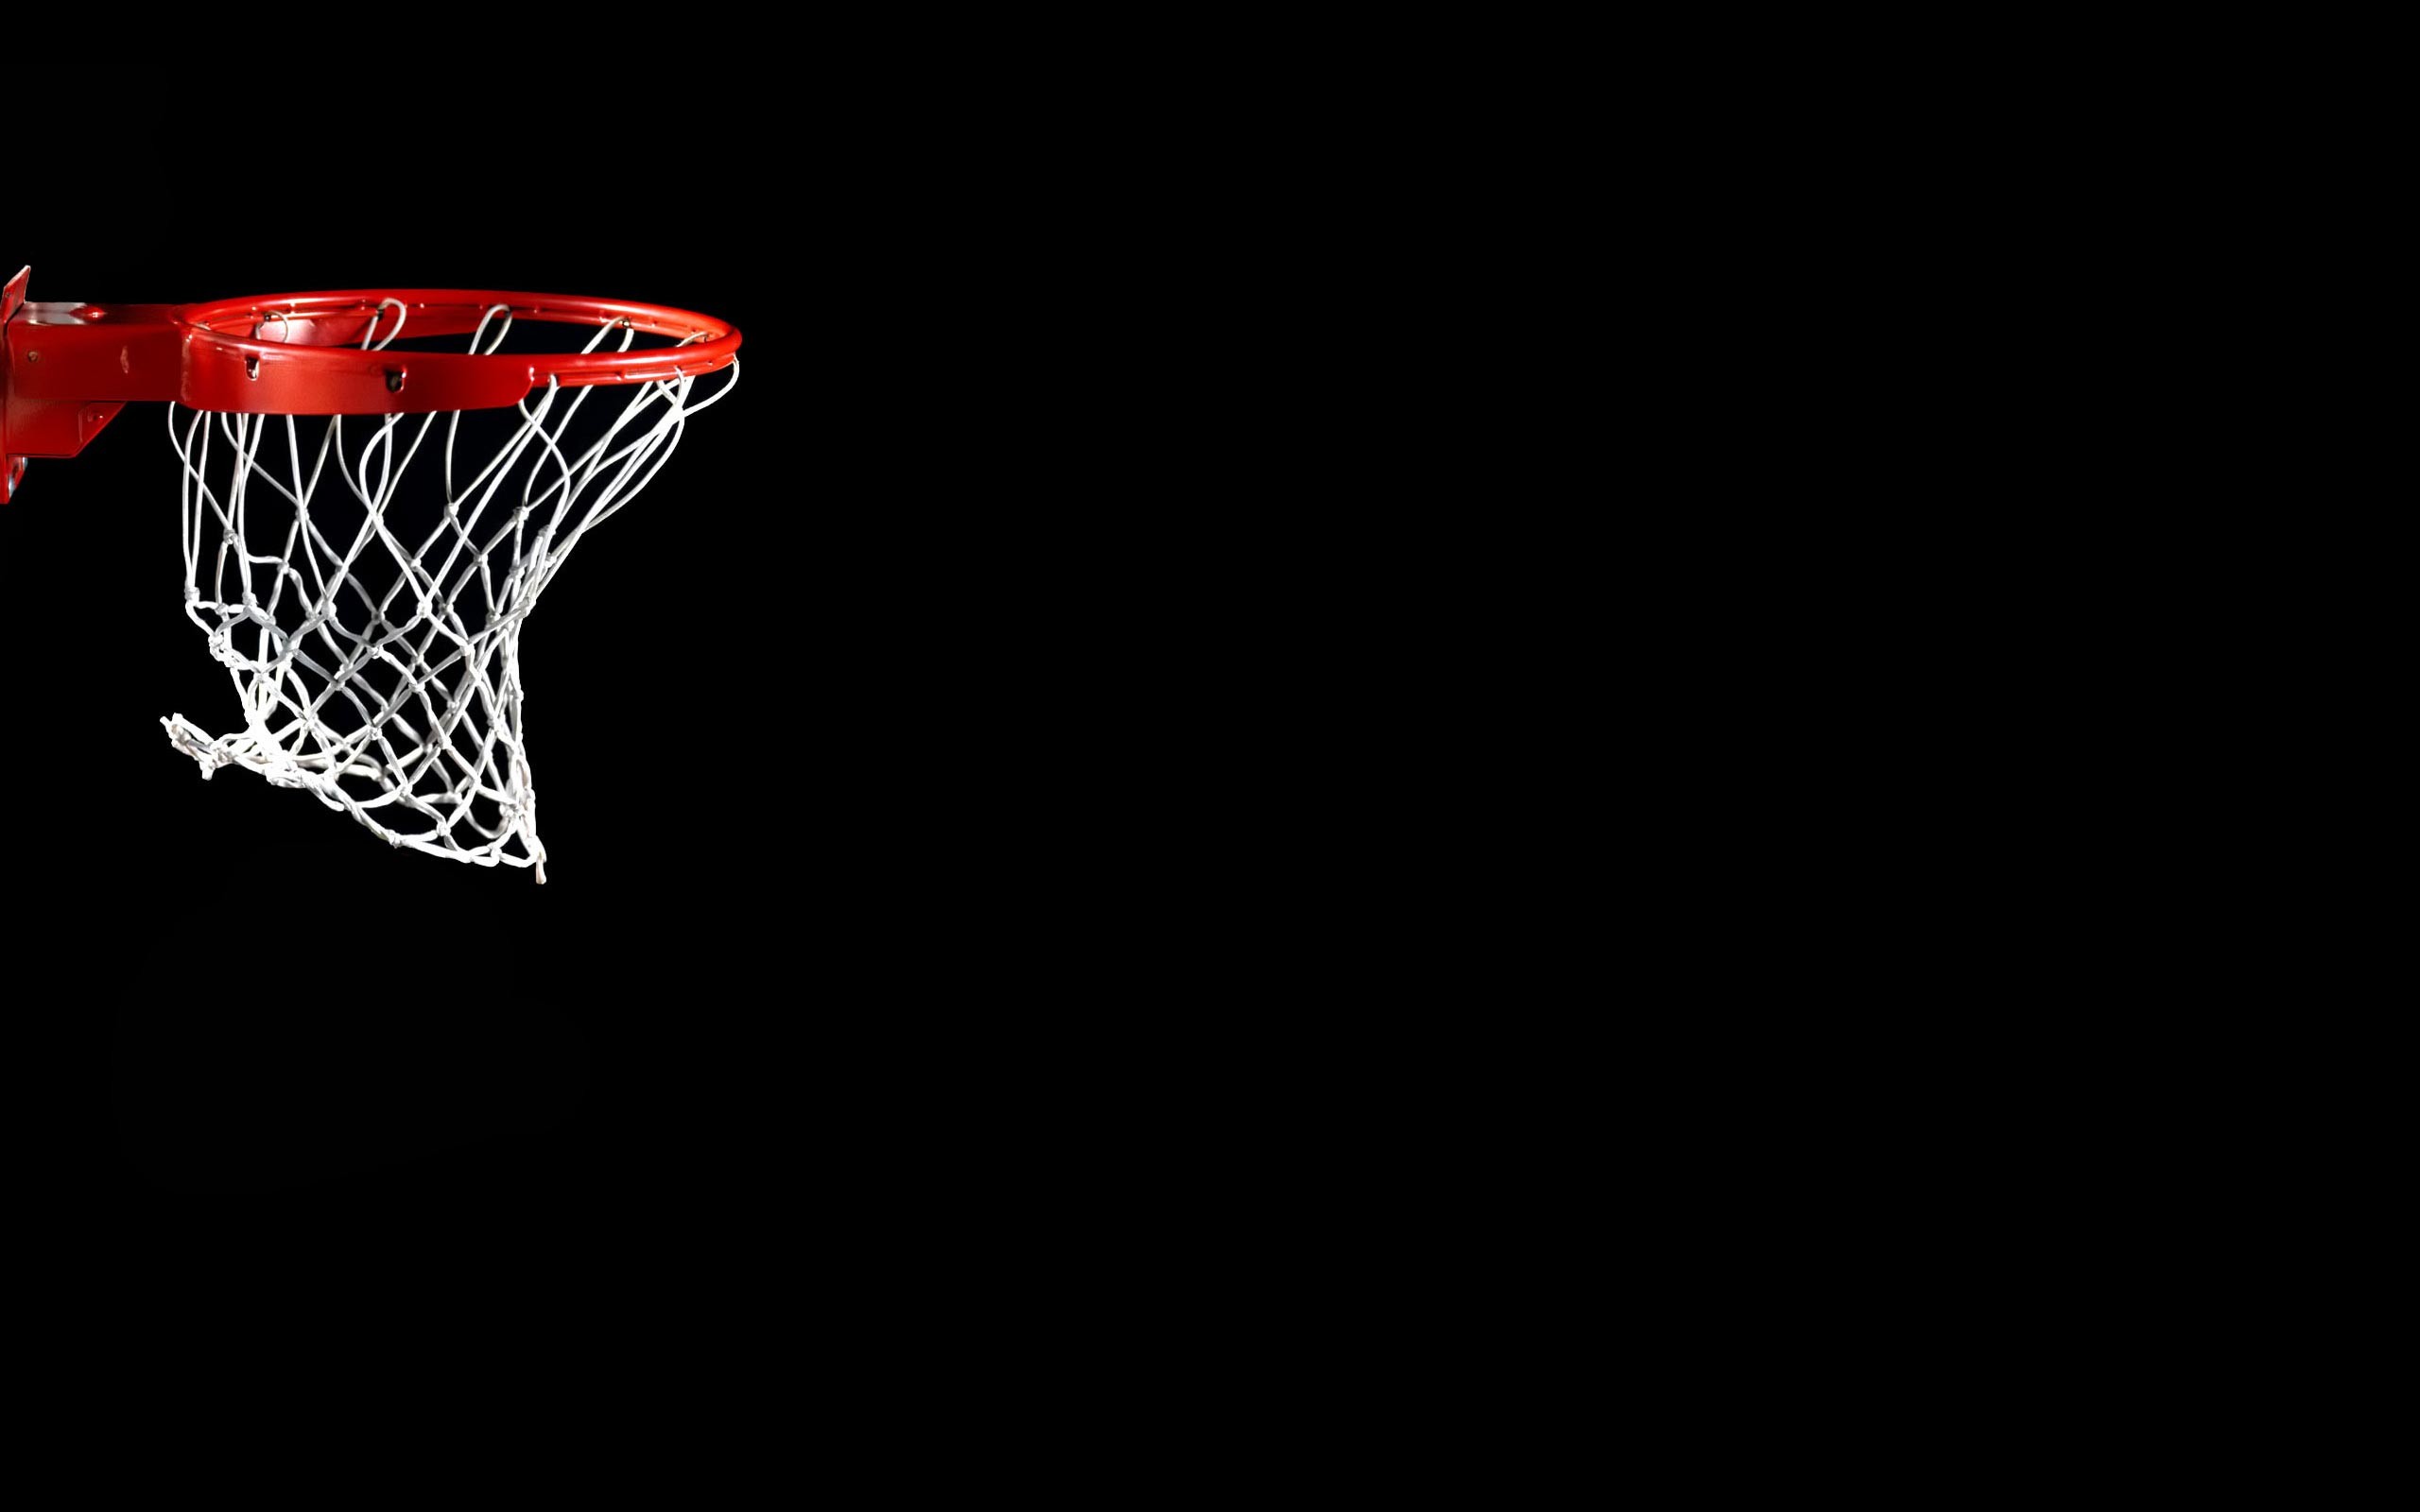 cool fondos de pantalla de baloncesto,aro de baloncesto,baloncesto,equipo deportivo,fuente,red